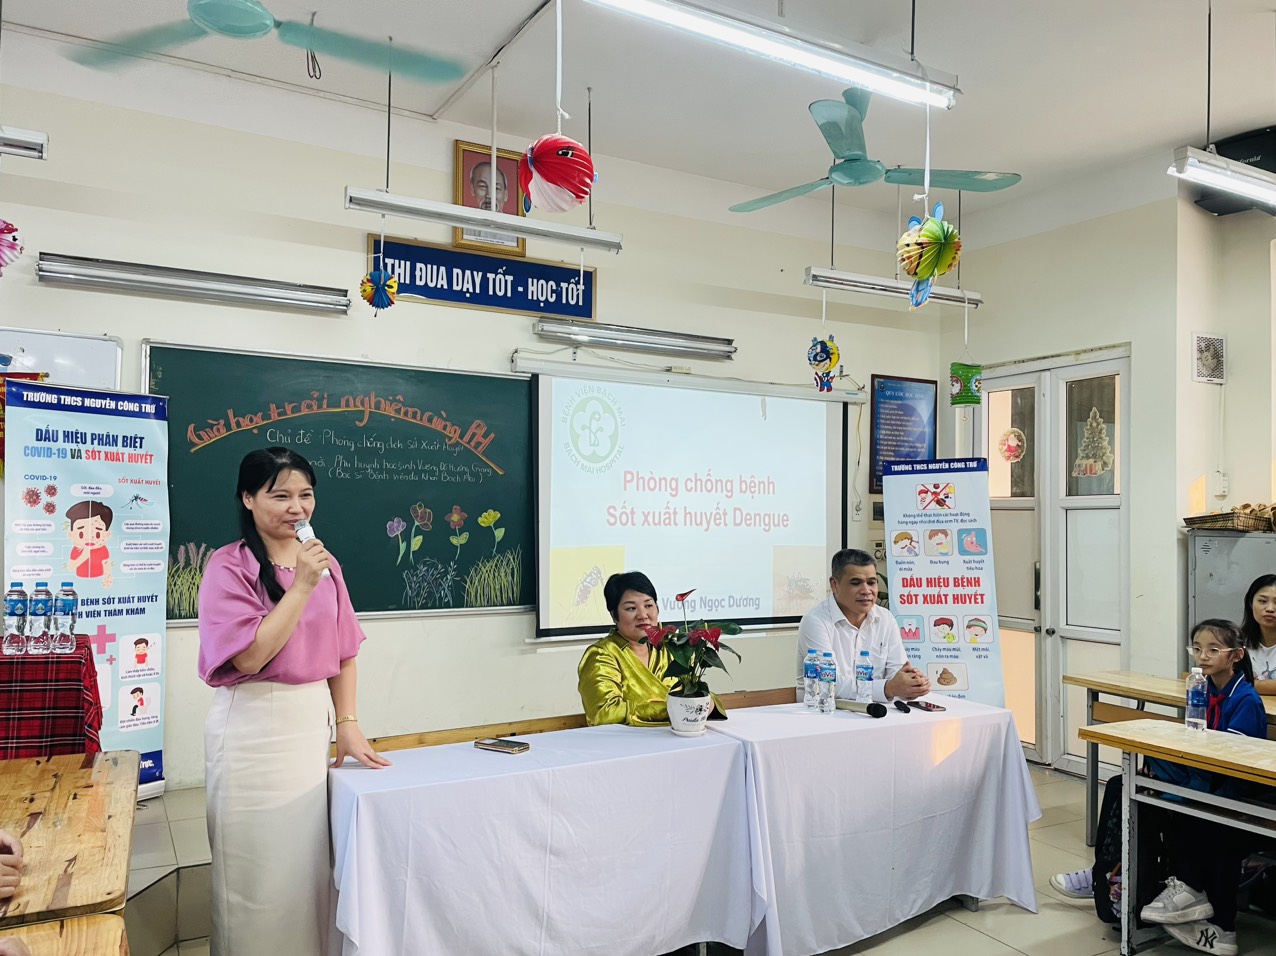 Cô Lê Hoàn Châu, Hiệu trưởng nhà trường nhấn mạnh ý nghĩa của mô hình và khẳng định sự cẩn thiết của việc tuyên truyền bệnh sốt xuất huyết.